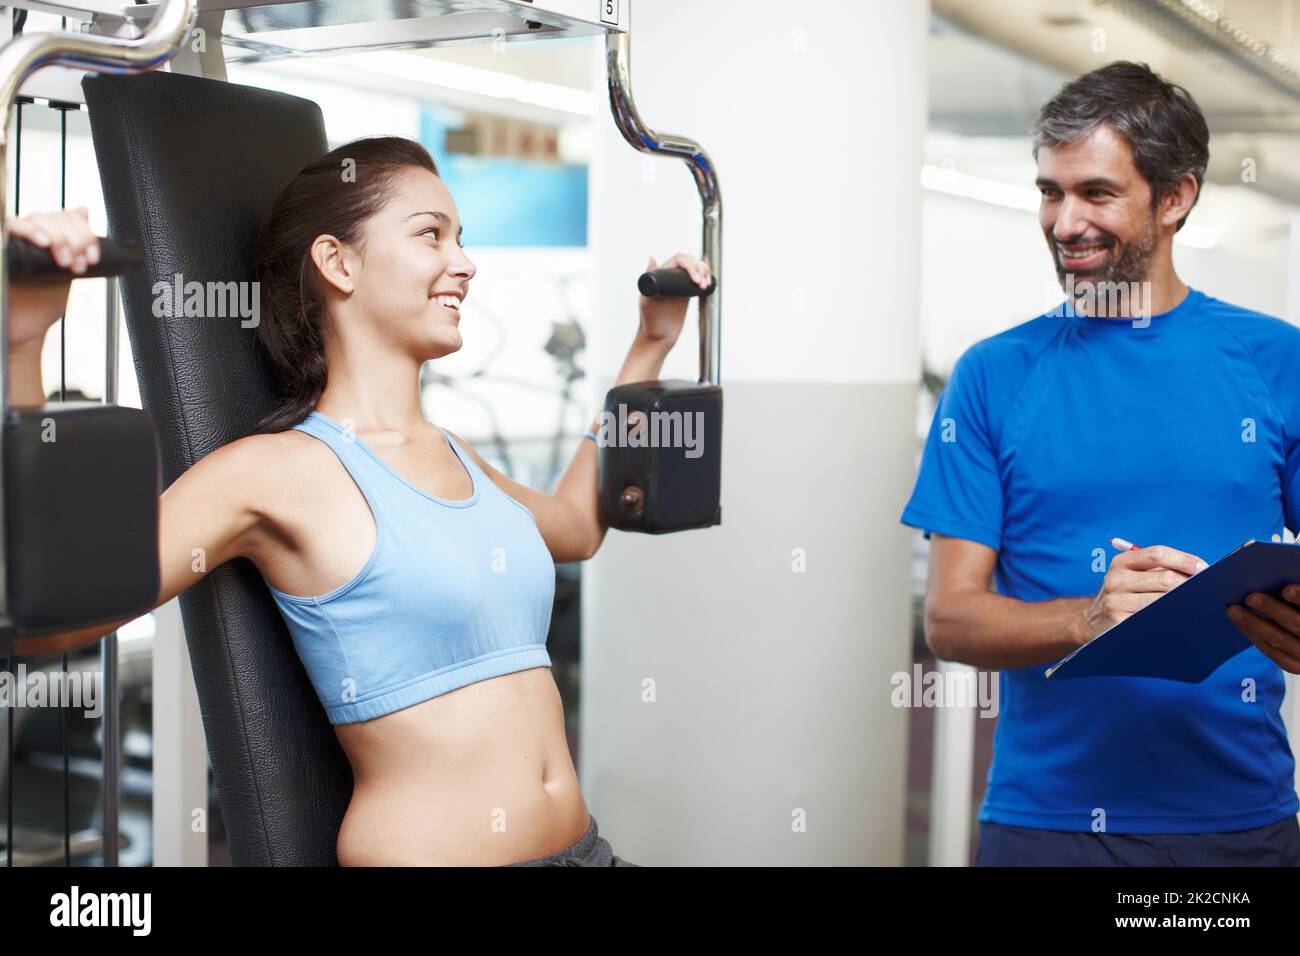 Mache ich das richtig? Eine kurze Aufnahme einer attraktiven jungen Frau, die mit einem Trainingsgerät unterwegs ist, während ihr persönlicher Trainer anschaut. Stockfoto